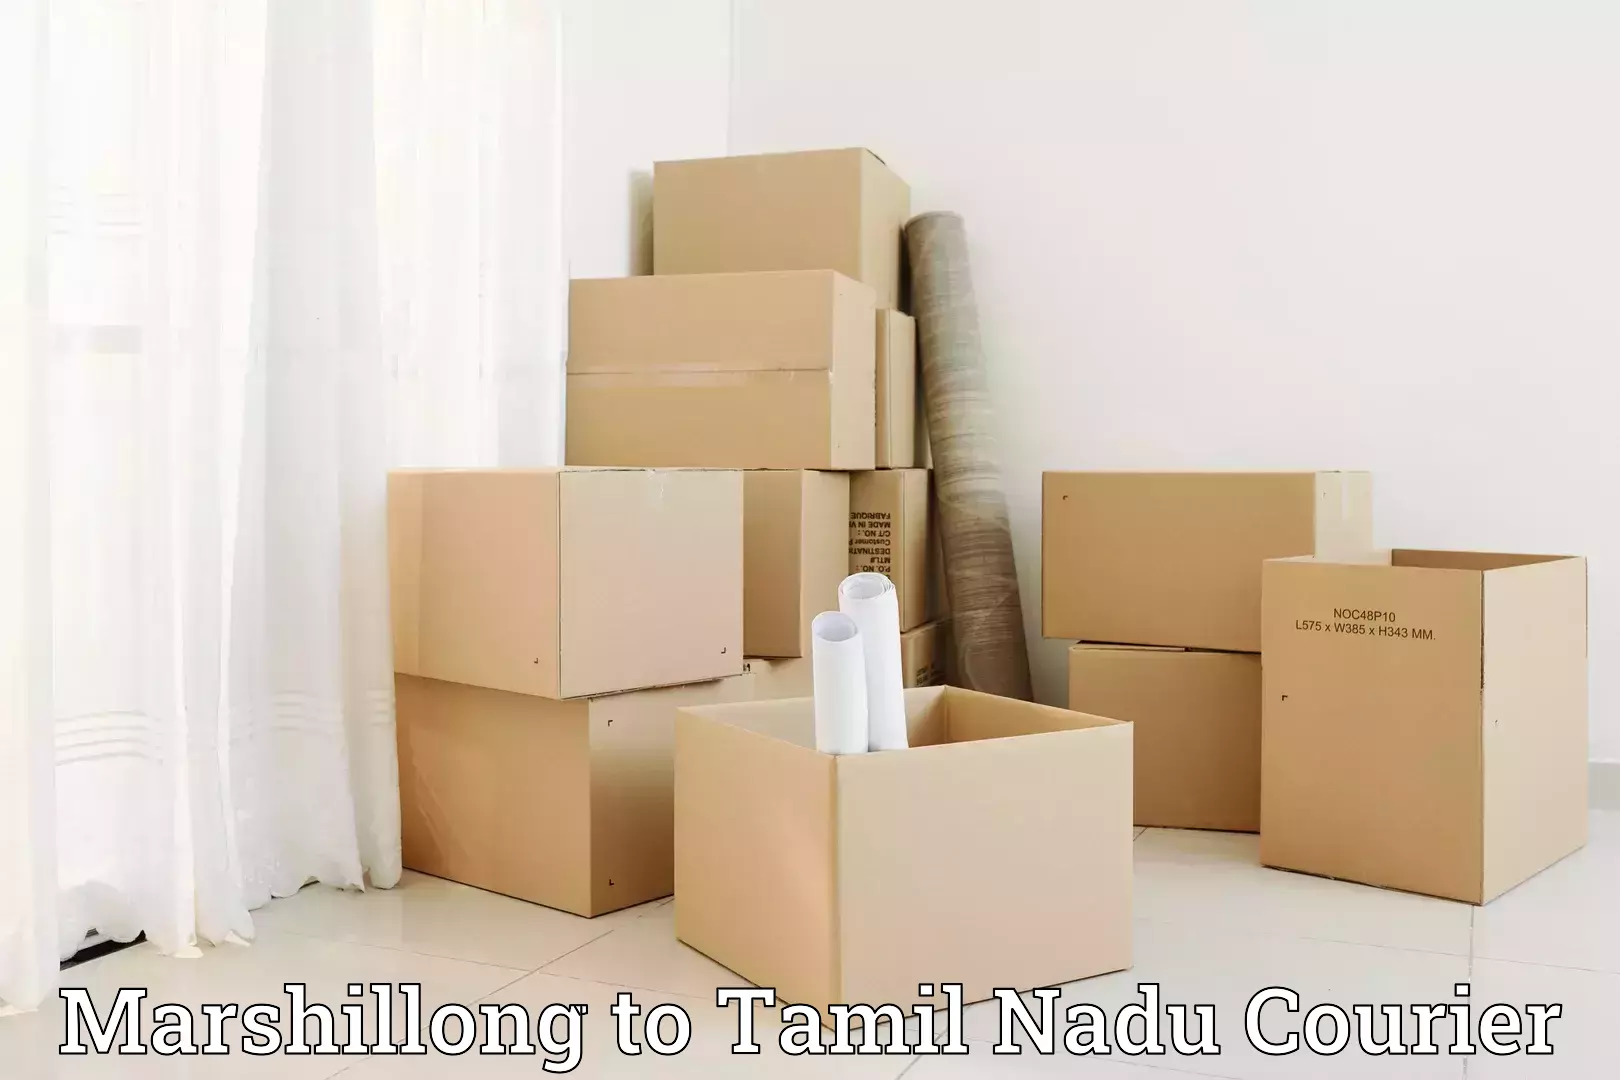 Professional movers and packers Marshillong to Periyakulam